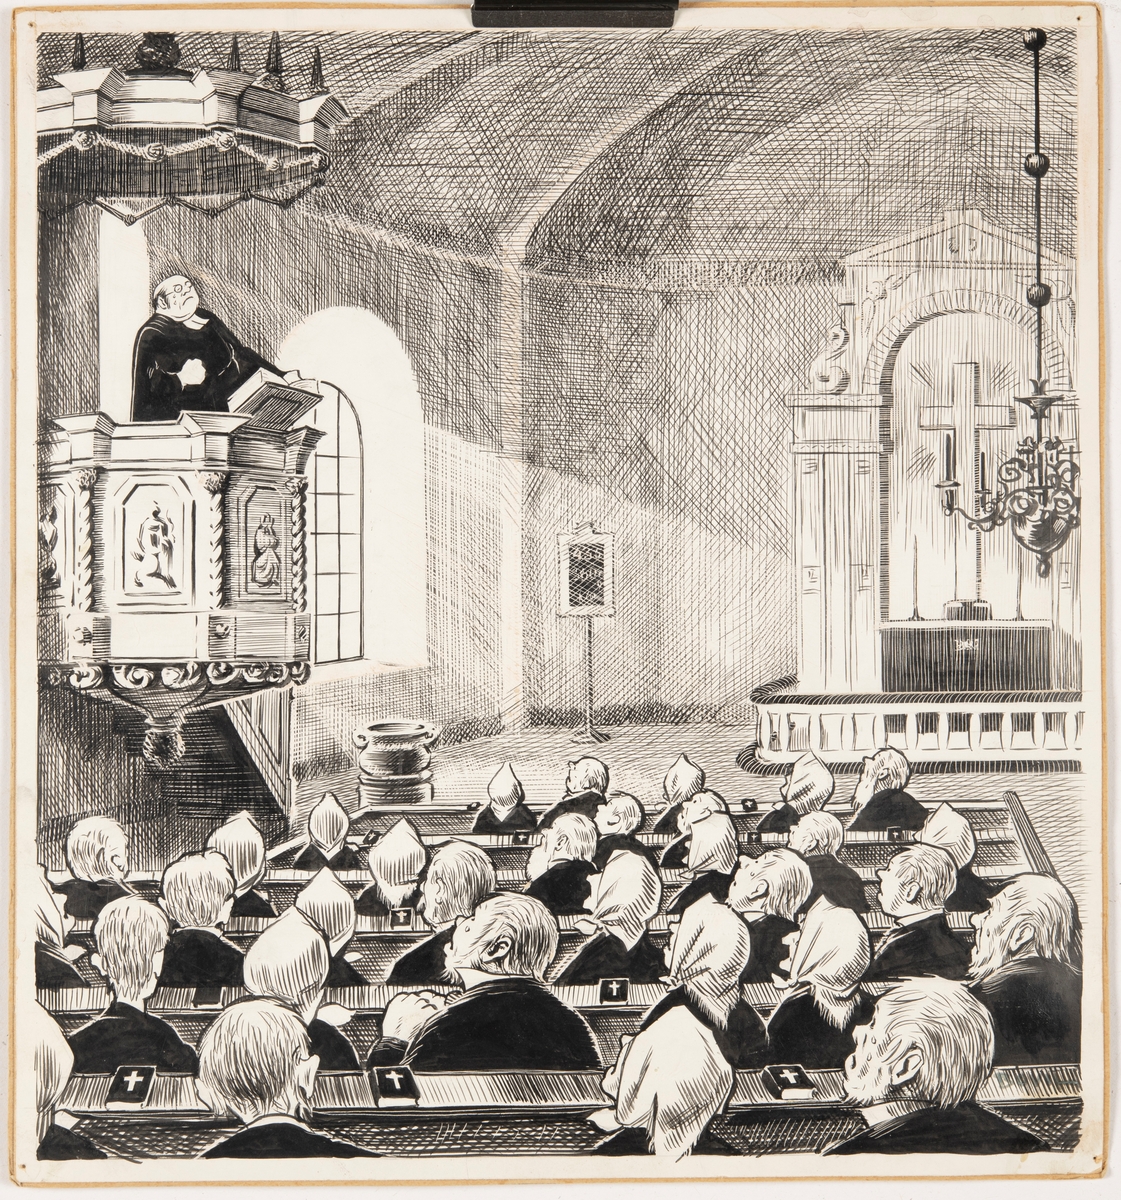 Illustration av dikten "Våran prost" av Gustaf Fröding, publicerad i "Guitarr och dragharmonika" år 1891.

Illustrationens motiv utspelar sig i ett kyrkorum. En präst står i predikstolen och predikar för fullsatta kyrkobänkar. Prästen gråter och delar av församlingen med. Genom kyrkofönstret lyser solen skrapt in mot altaruppsatsen.